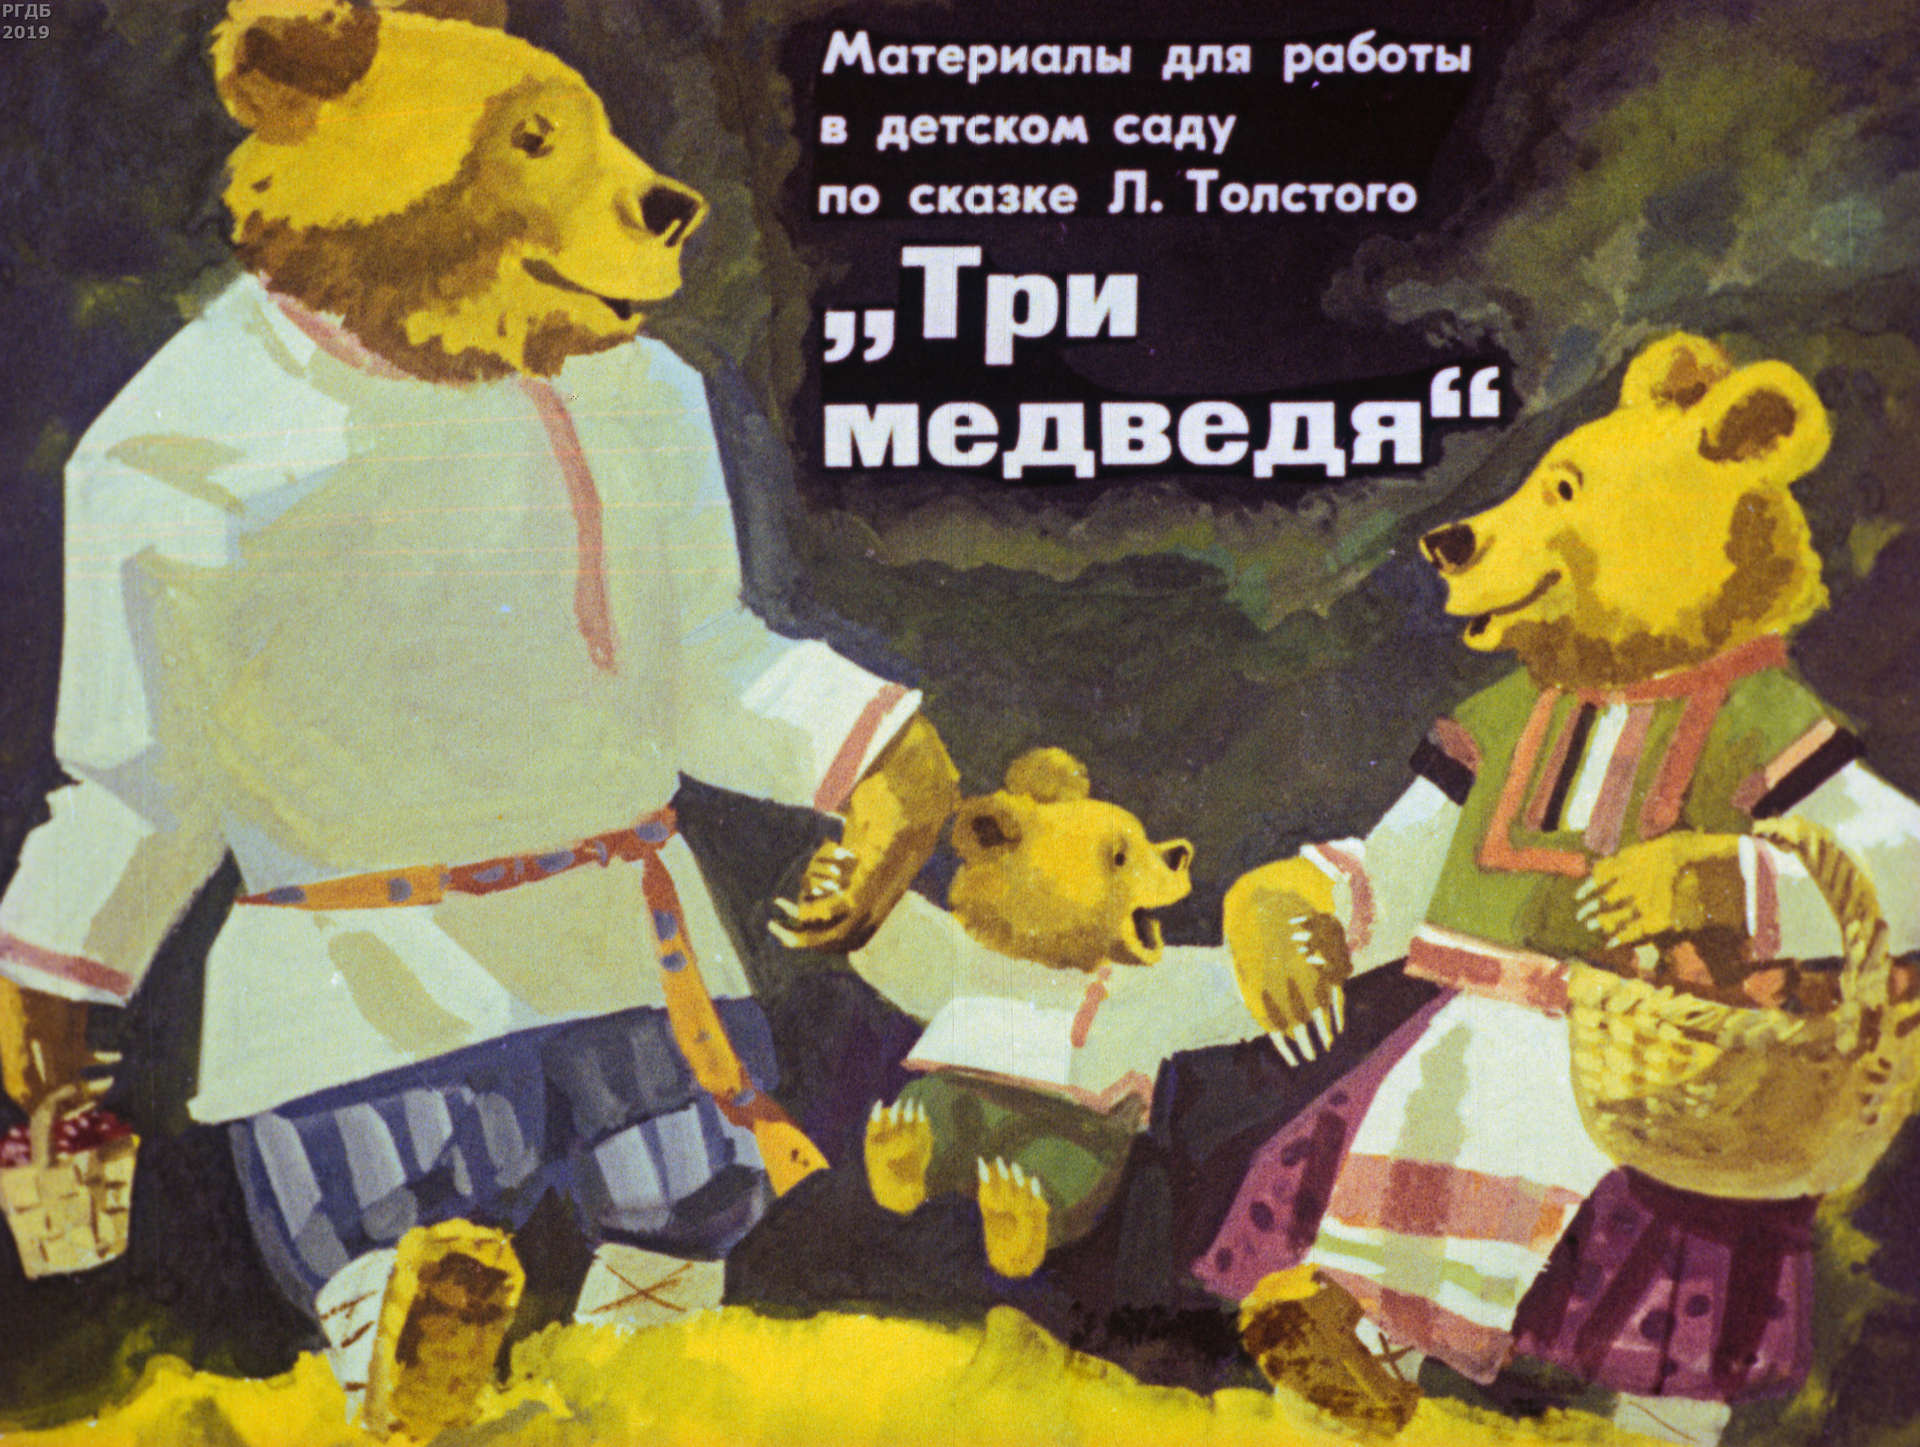 Материалы для работы в детском саду: по сказке Л.Н. Толстого Три медведя